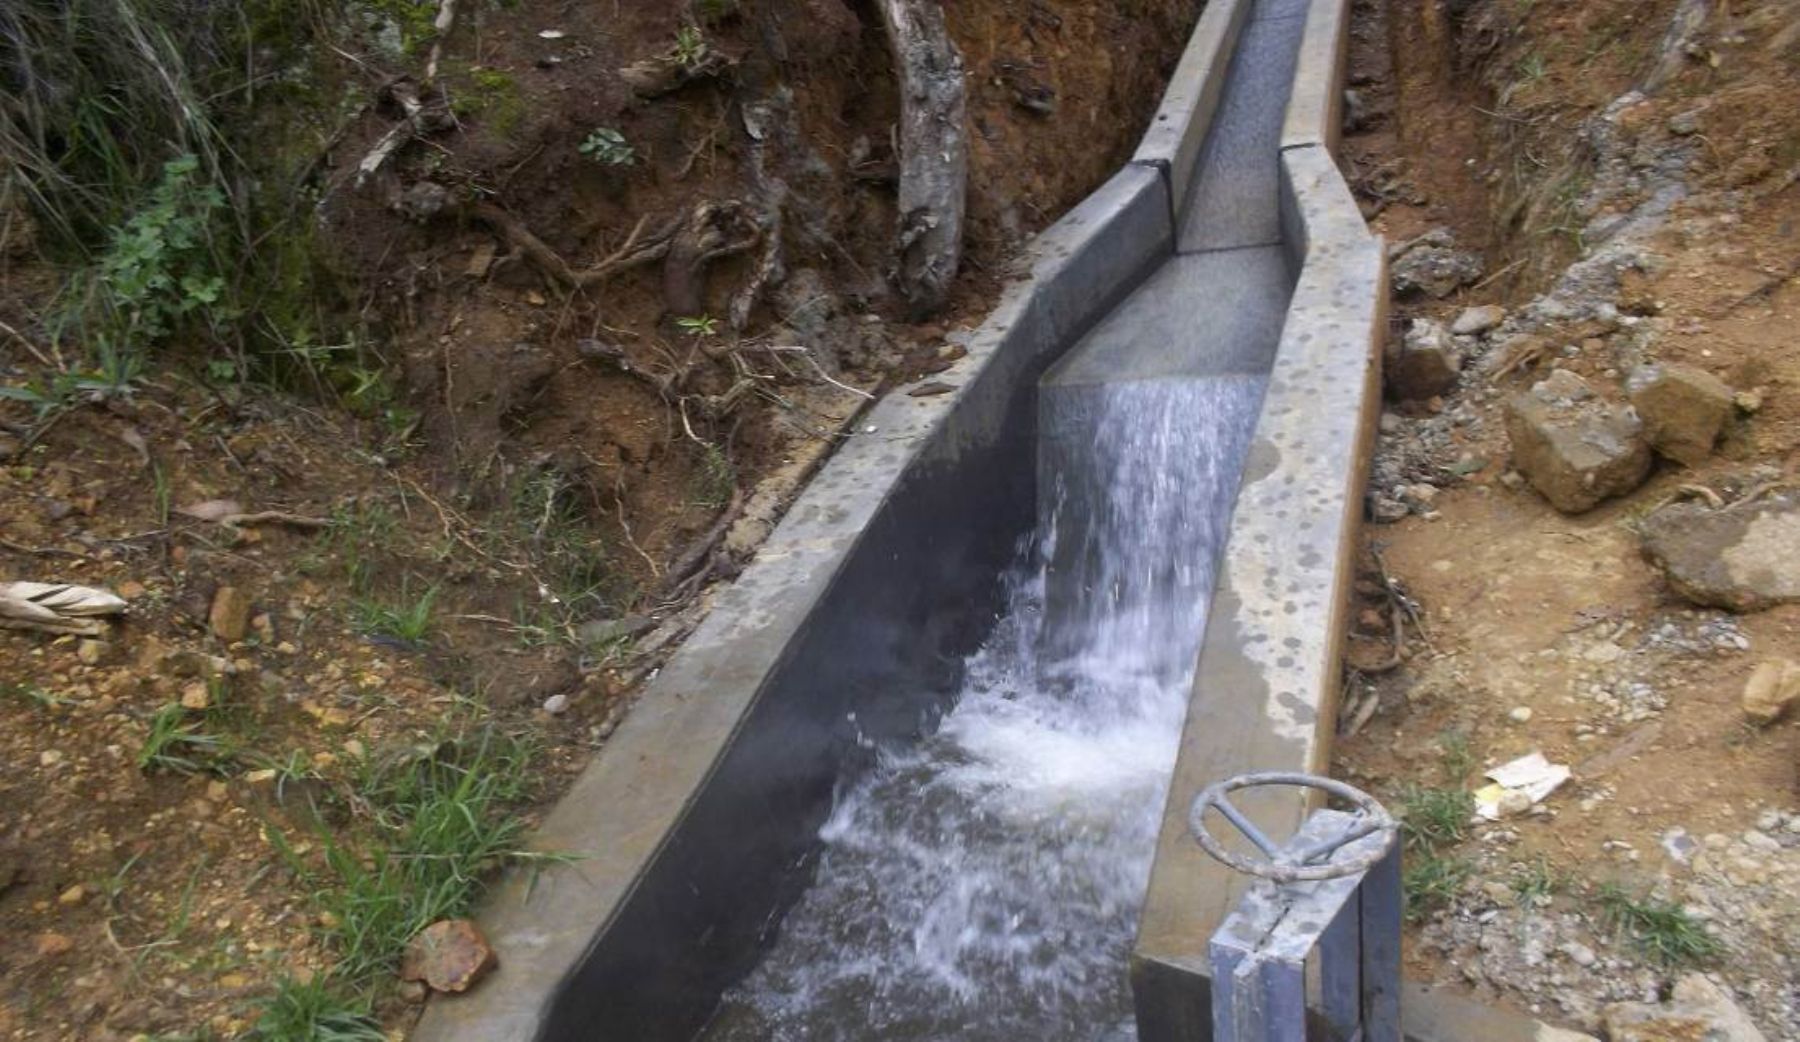 Nuevo canal llegará agua a 45 hectáreas en Huancayo